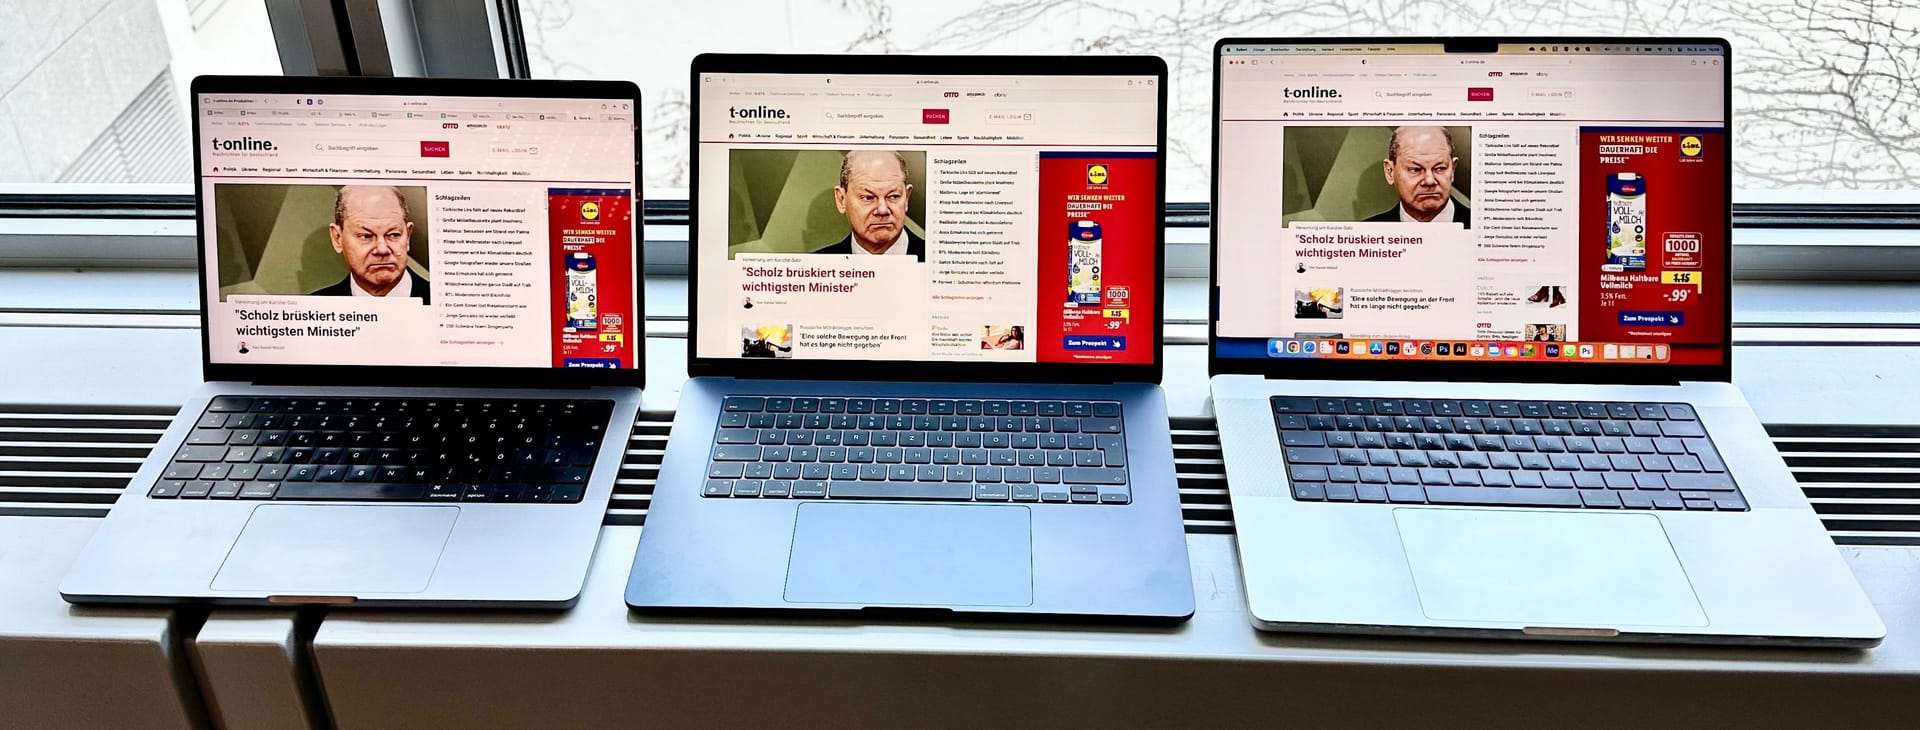 MacBook Air 15" (Mitte) im Größenvergleich zum MacBook Pro 14" (links) und dem MacBook Pro 16" (rechts). Ein neues MacBook Air 13" hatten wir für ein Vergleichsfoto leider nicht vor Ort.